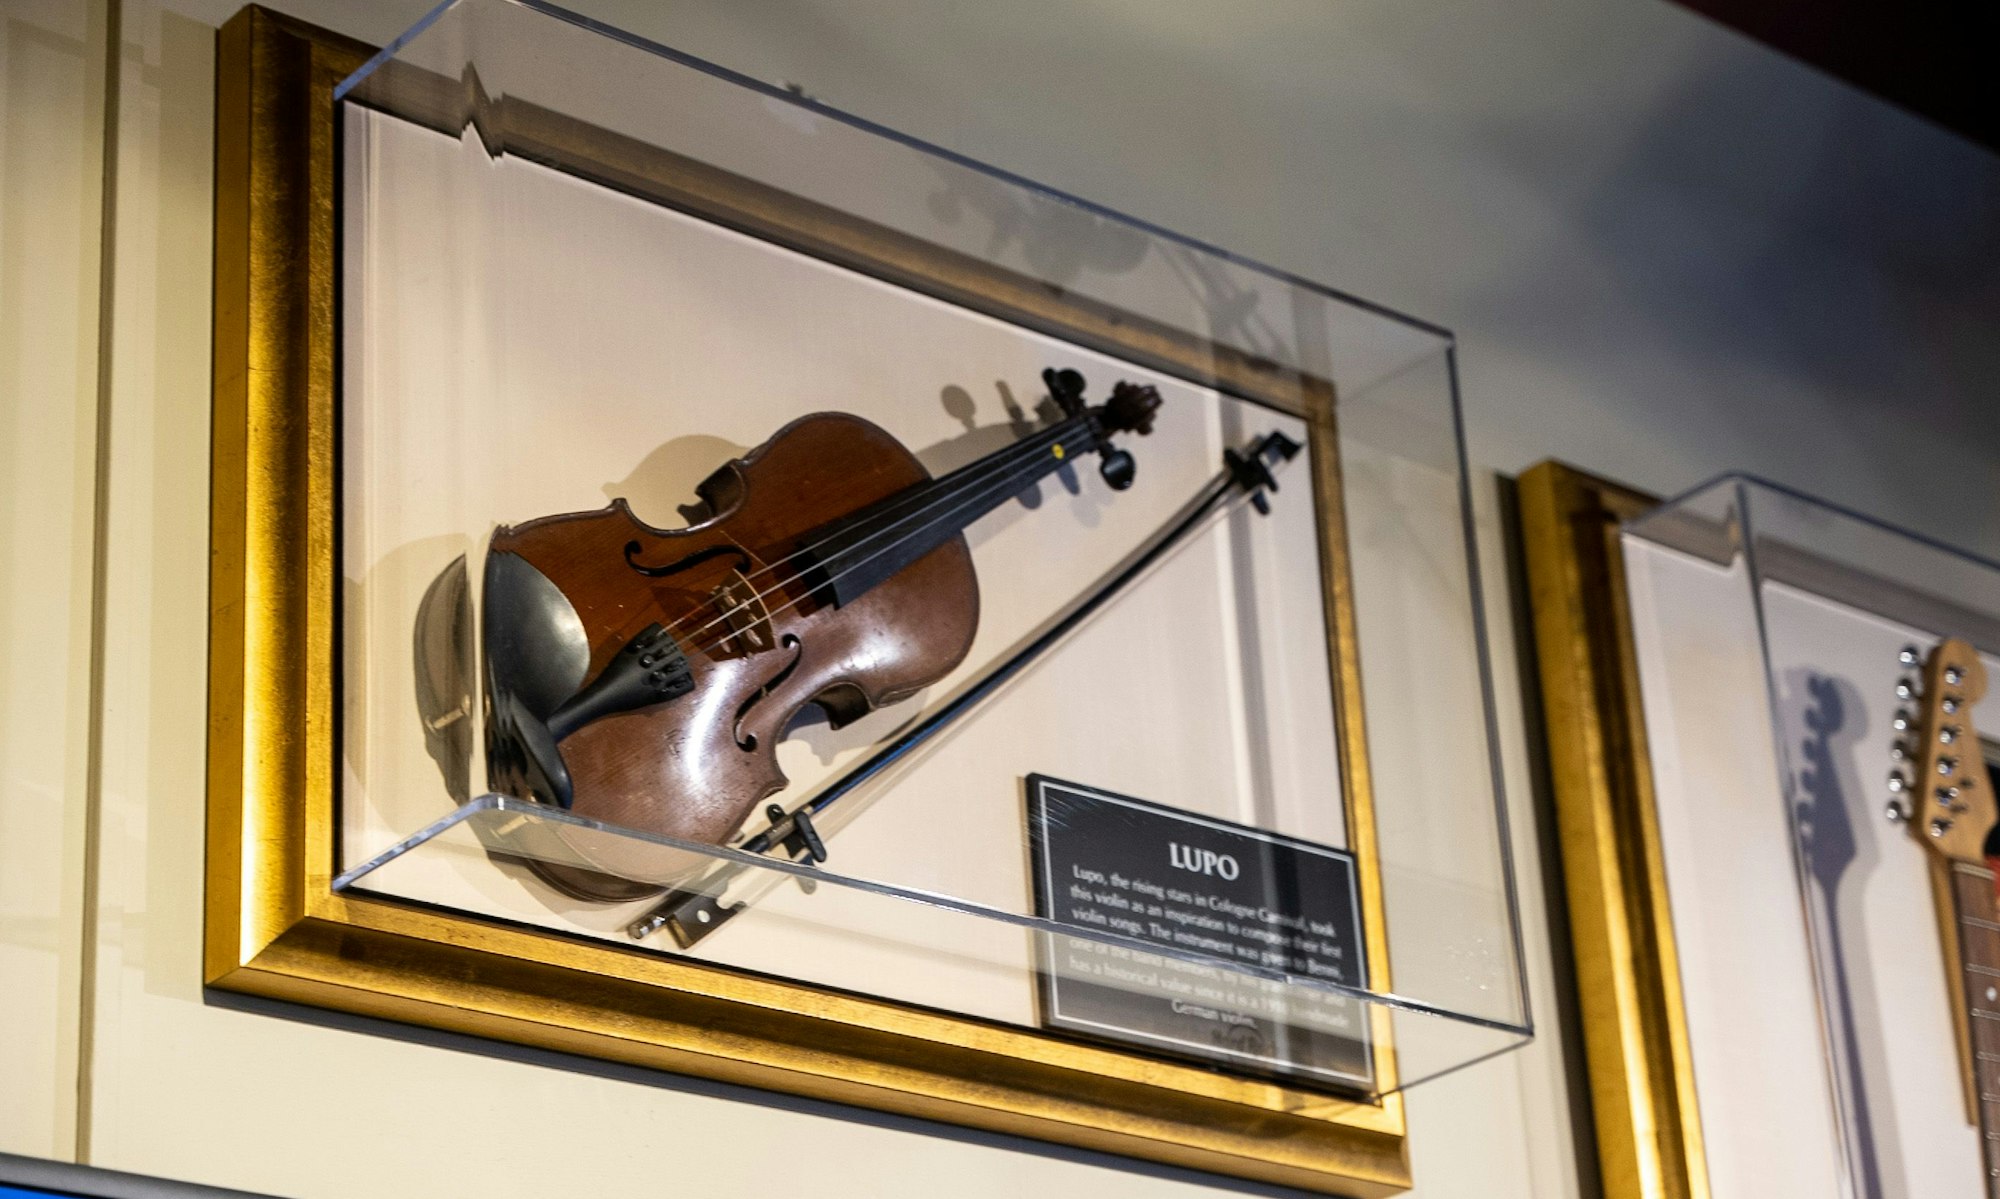 Auch von kölschen Musikern gibt es Ausstellungsstücke im Hard Rock Cafe, hier etwa eine Geige von der kölschen Band Lupo.